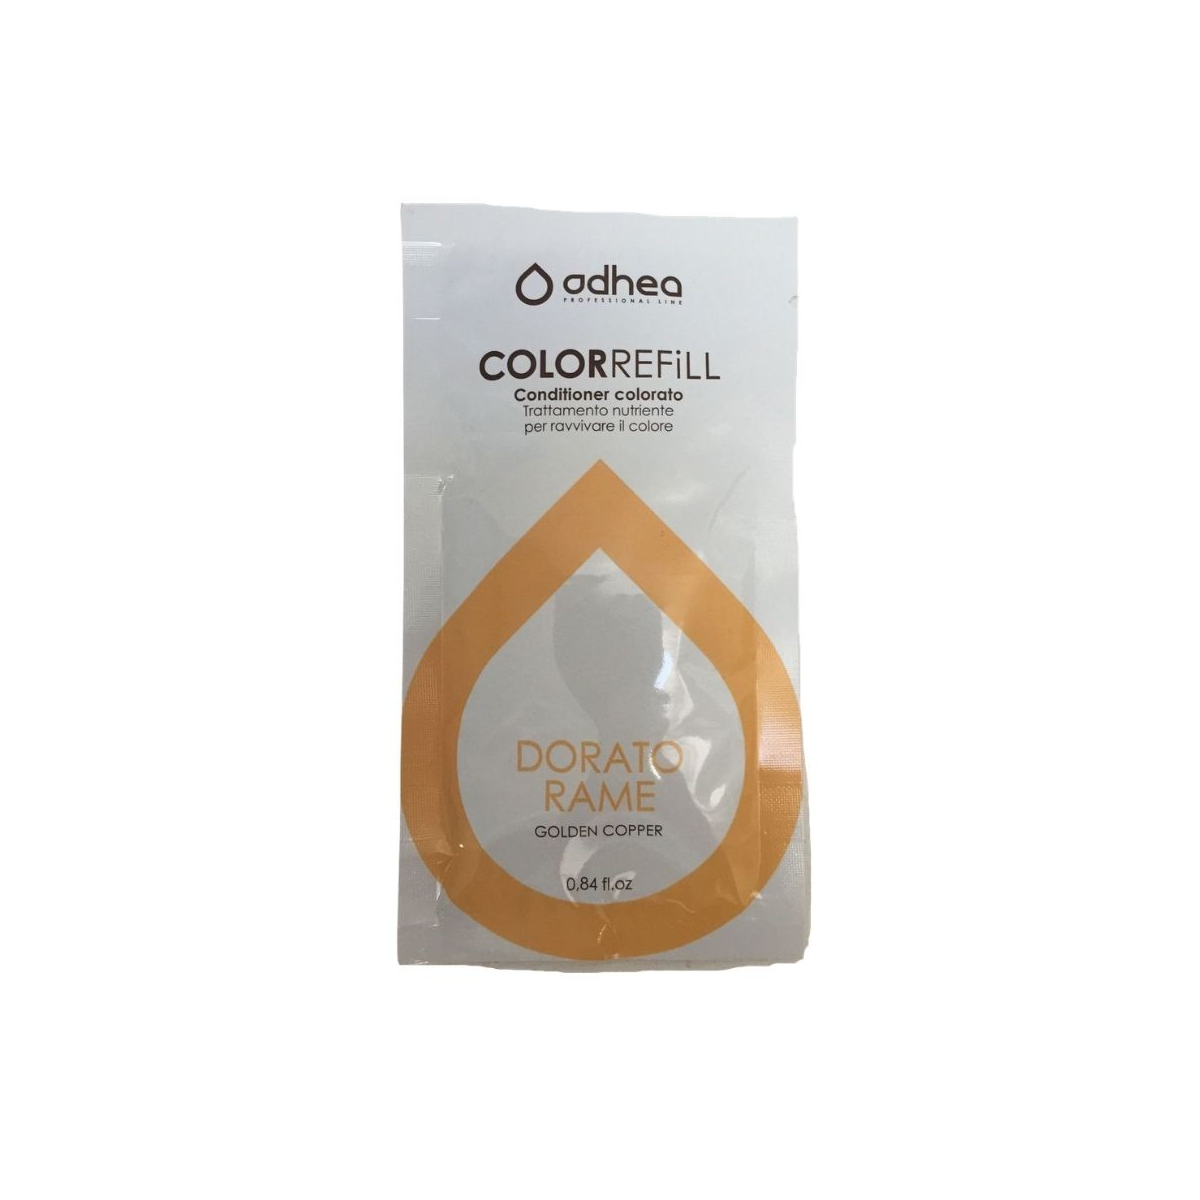 ODHEA - COLOR REFILL DORATO RAME (25ml) Conditioner colorato